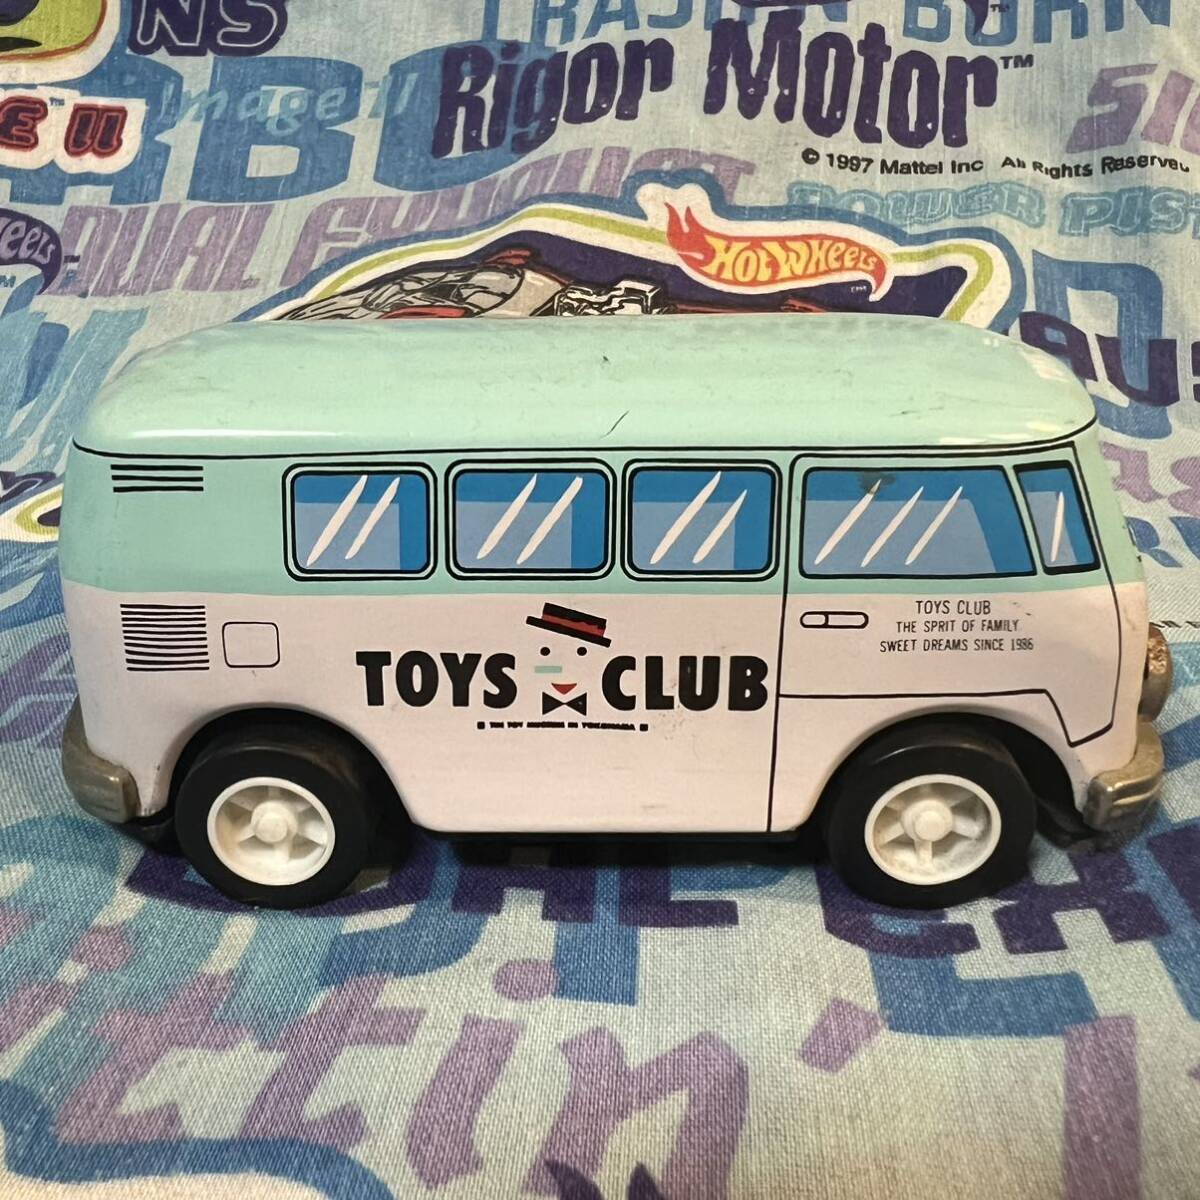 TOYS CLUB игрушки Club wagen bus VW BUS модель 2 TYPE Ⅱ Volkswagen сделано в Японии жестяная пластина подлинная вещь фрикцион миникар 